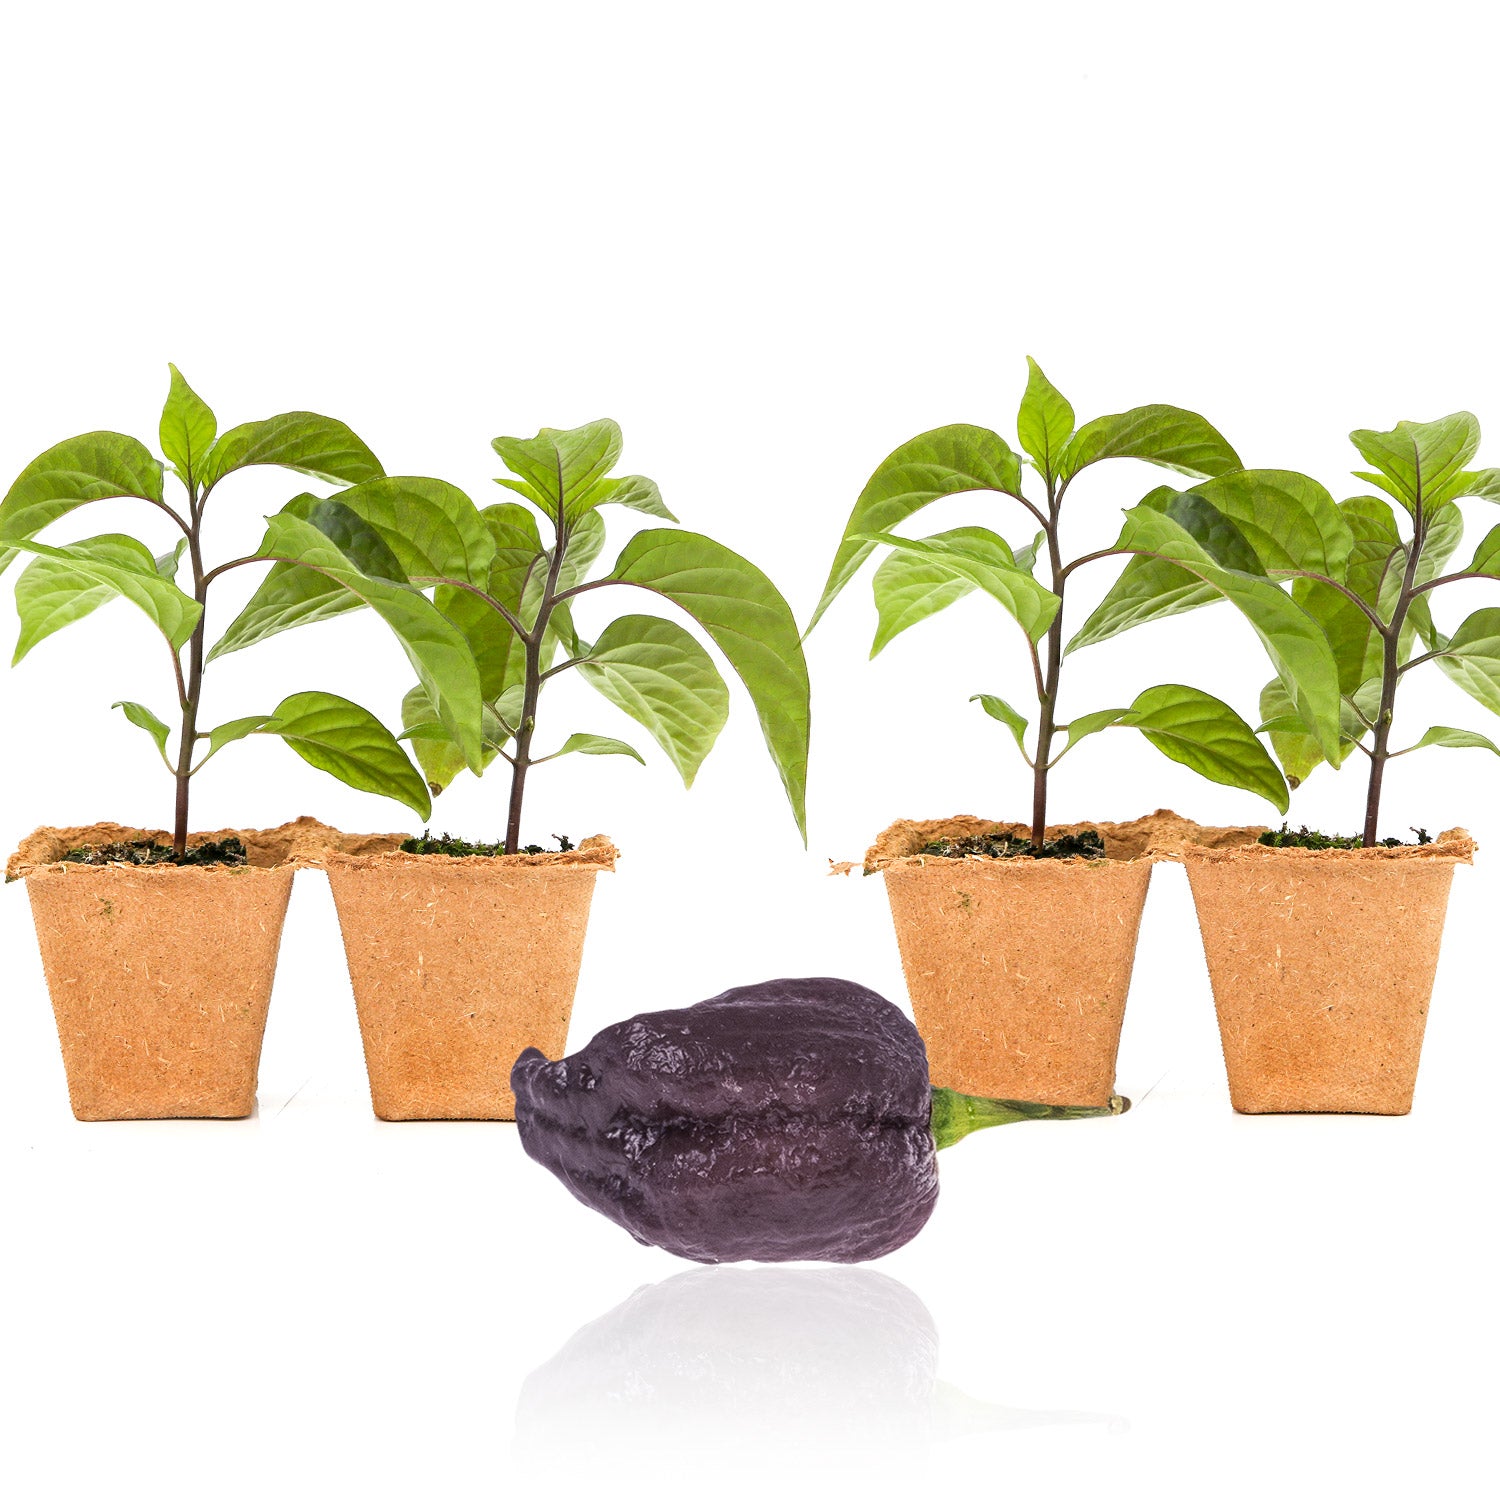 Pepper Joe's Purple Carolina Reaper seedlings for sale